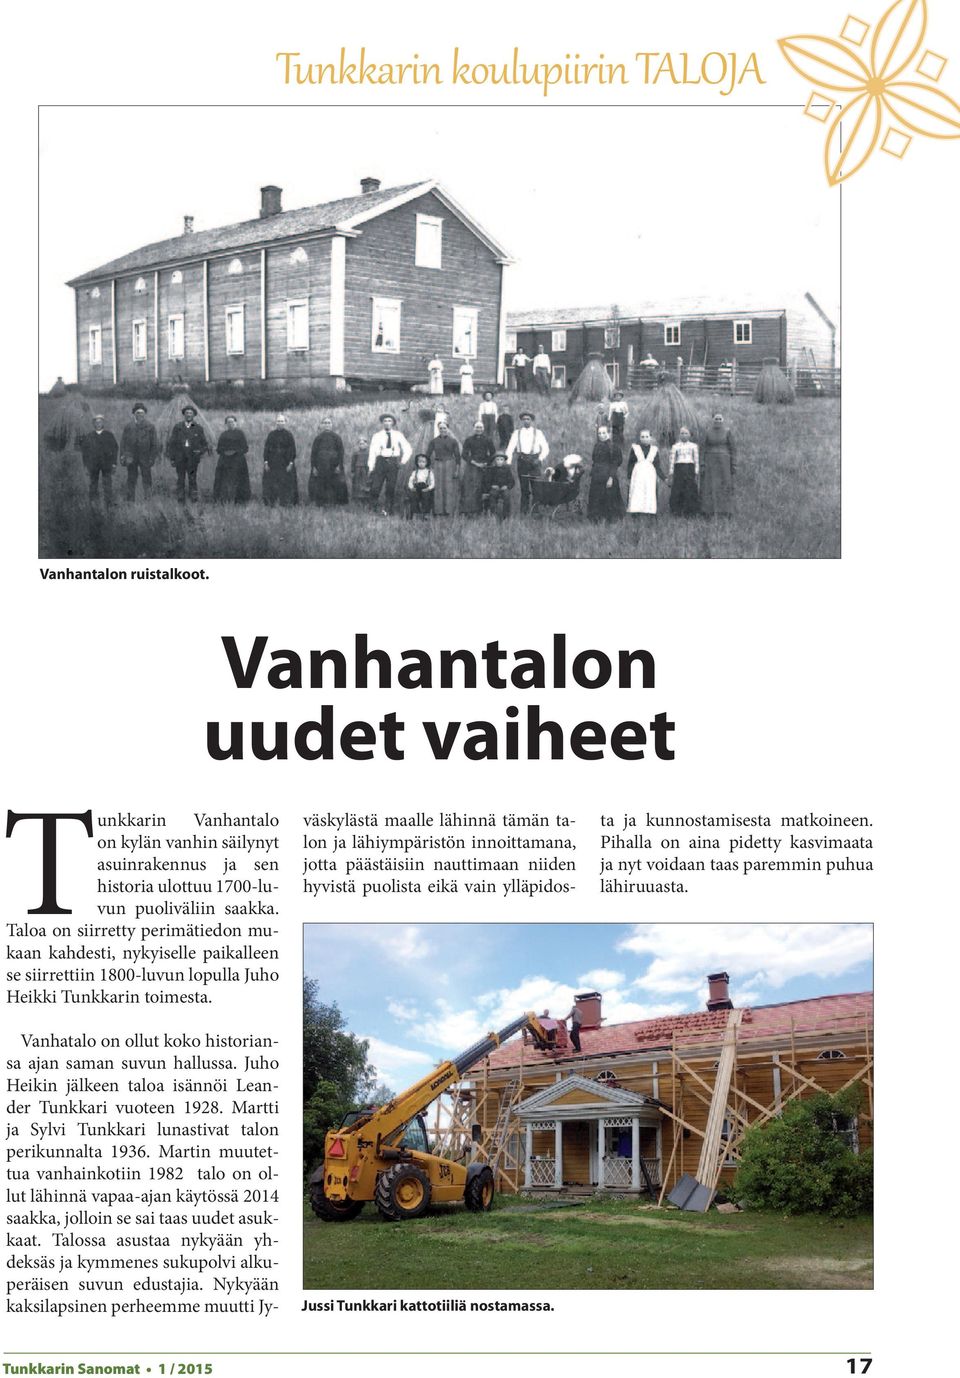 Vanhatalo on ollut koko historiansa ajan saman suvun hallussa. Juho Heikin jälkeen taloa isännöi Leander Tunkkari vuoteen 1928. Martti ja Sylvi Tunkkari lunastivat talon perikunnalta 1936.